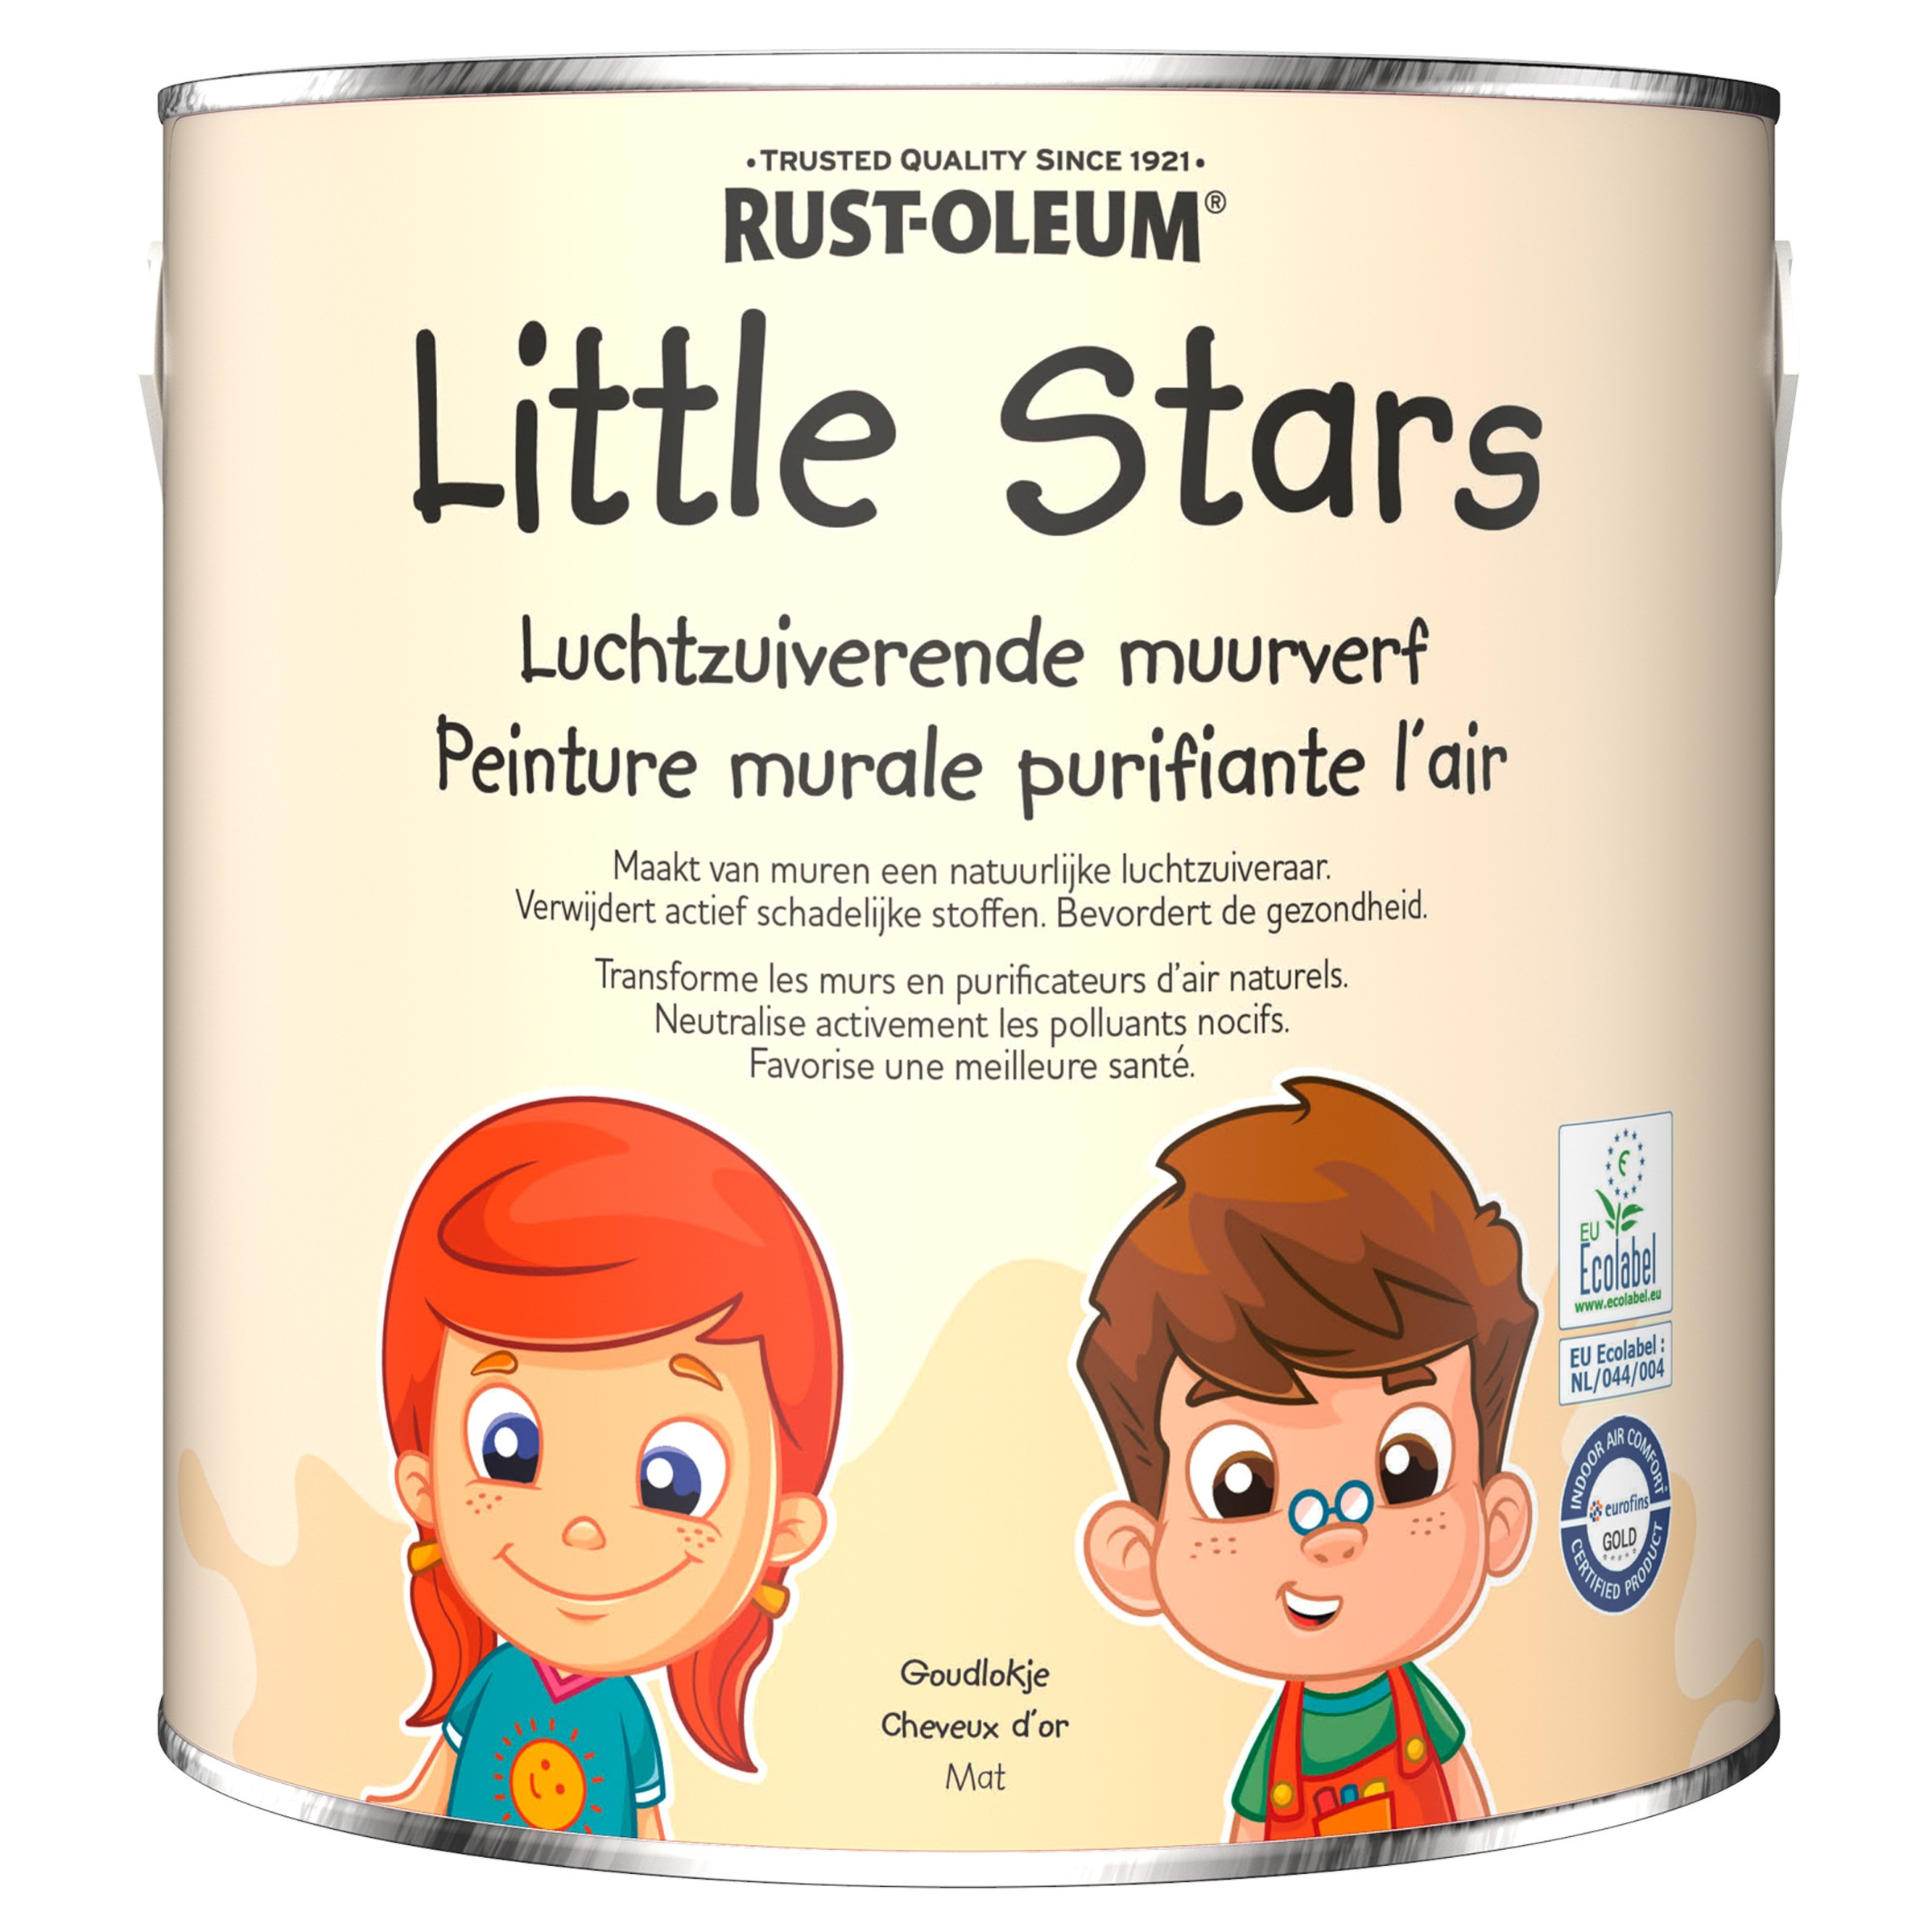 Little Stars - Luchtzuiverende muurverf Goudlokje - 125ML (tester) of | Online Kopen | Natuurverfwinkel